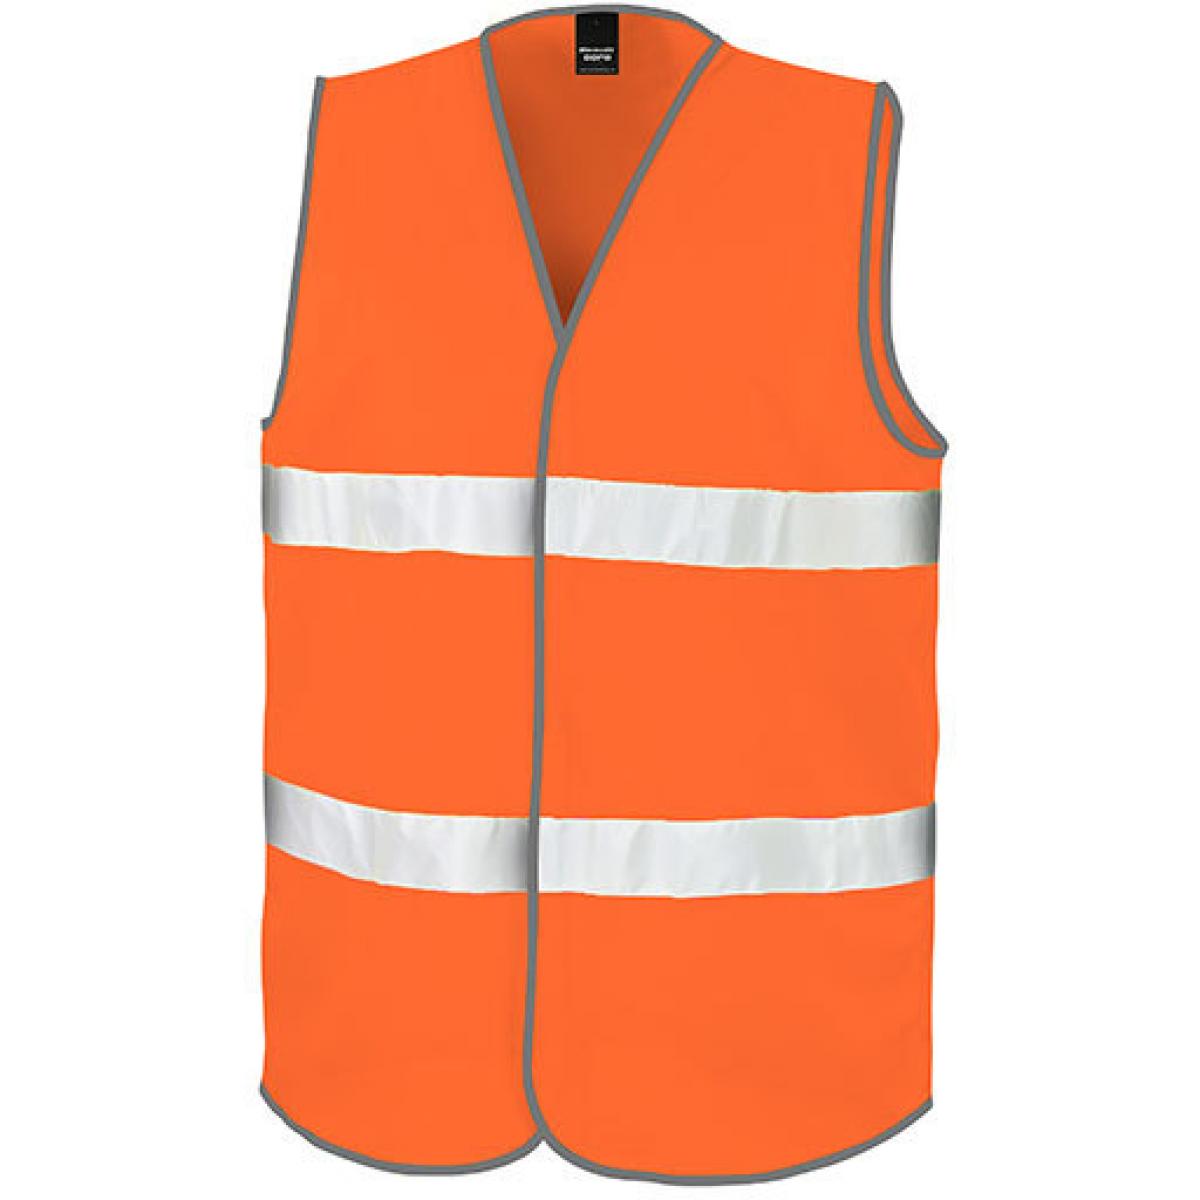 Hersteller: Result Core Herstellernummer: R200X Artikelbezeichnung: Motorist Safety Vest / ISOEN20471:2013, Klasse 2 Farbe: Fluorescent Orange